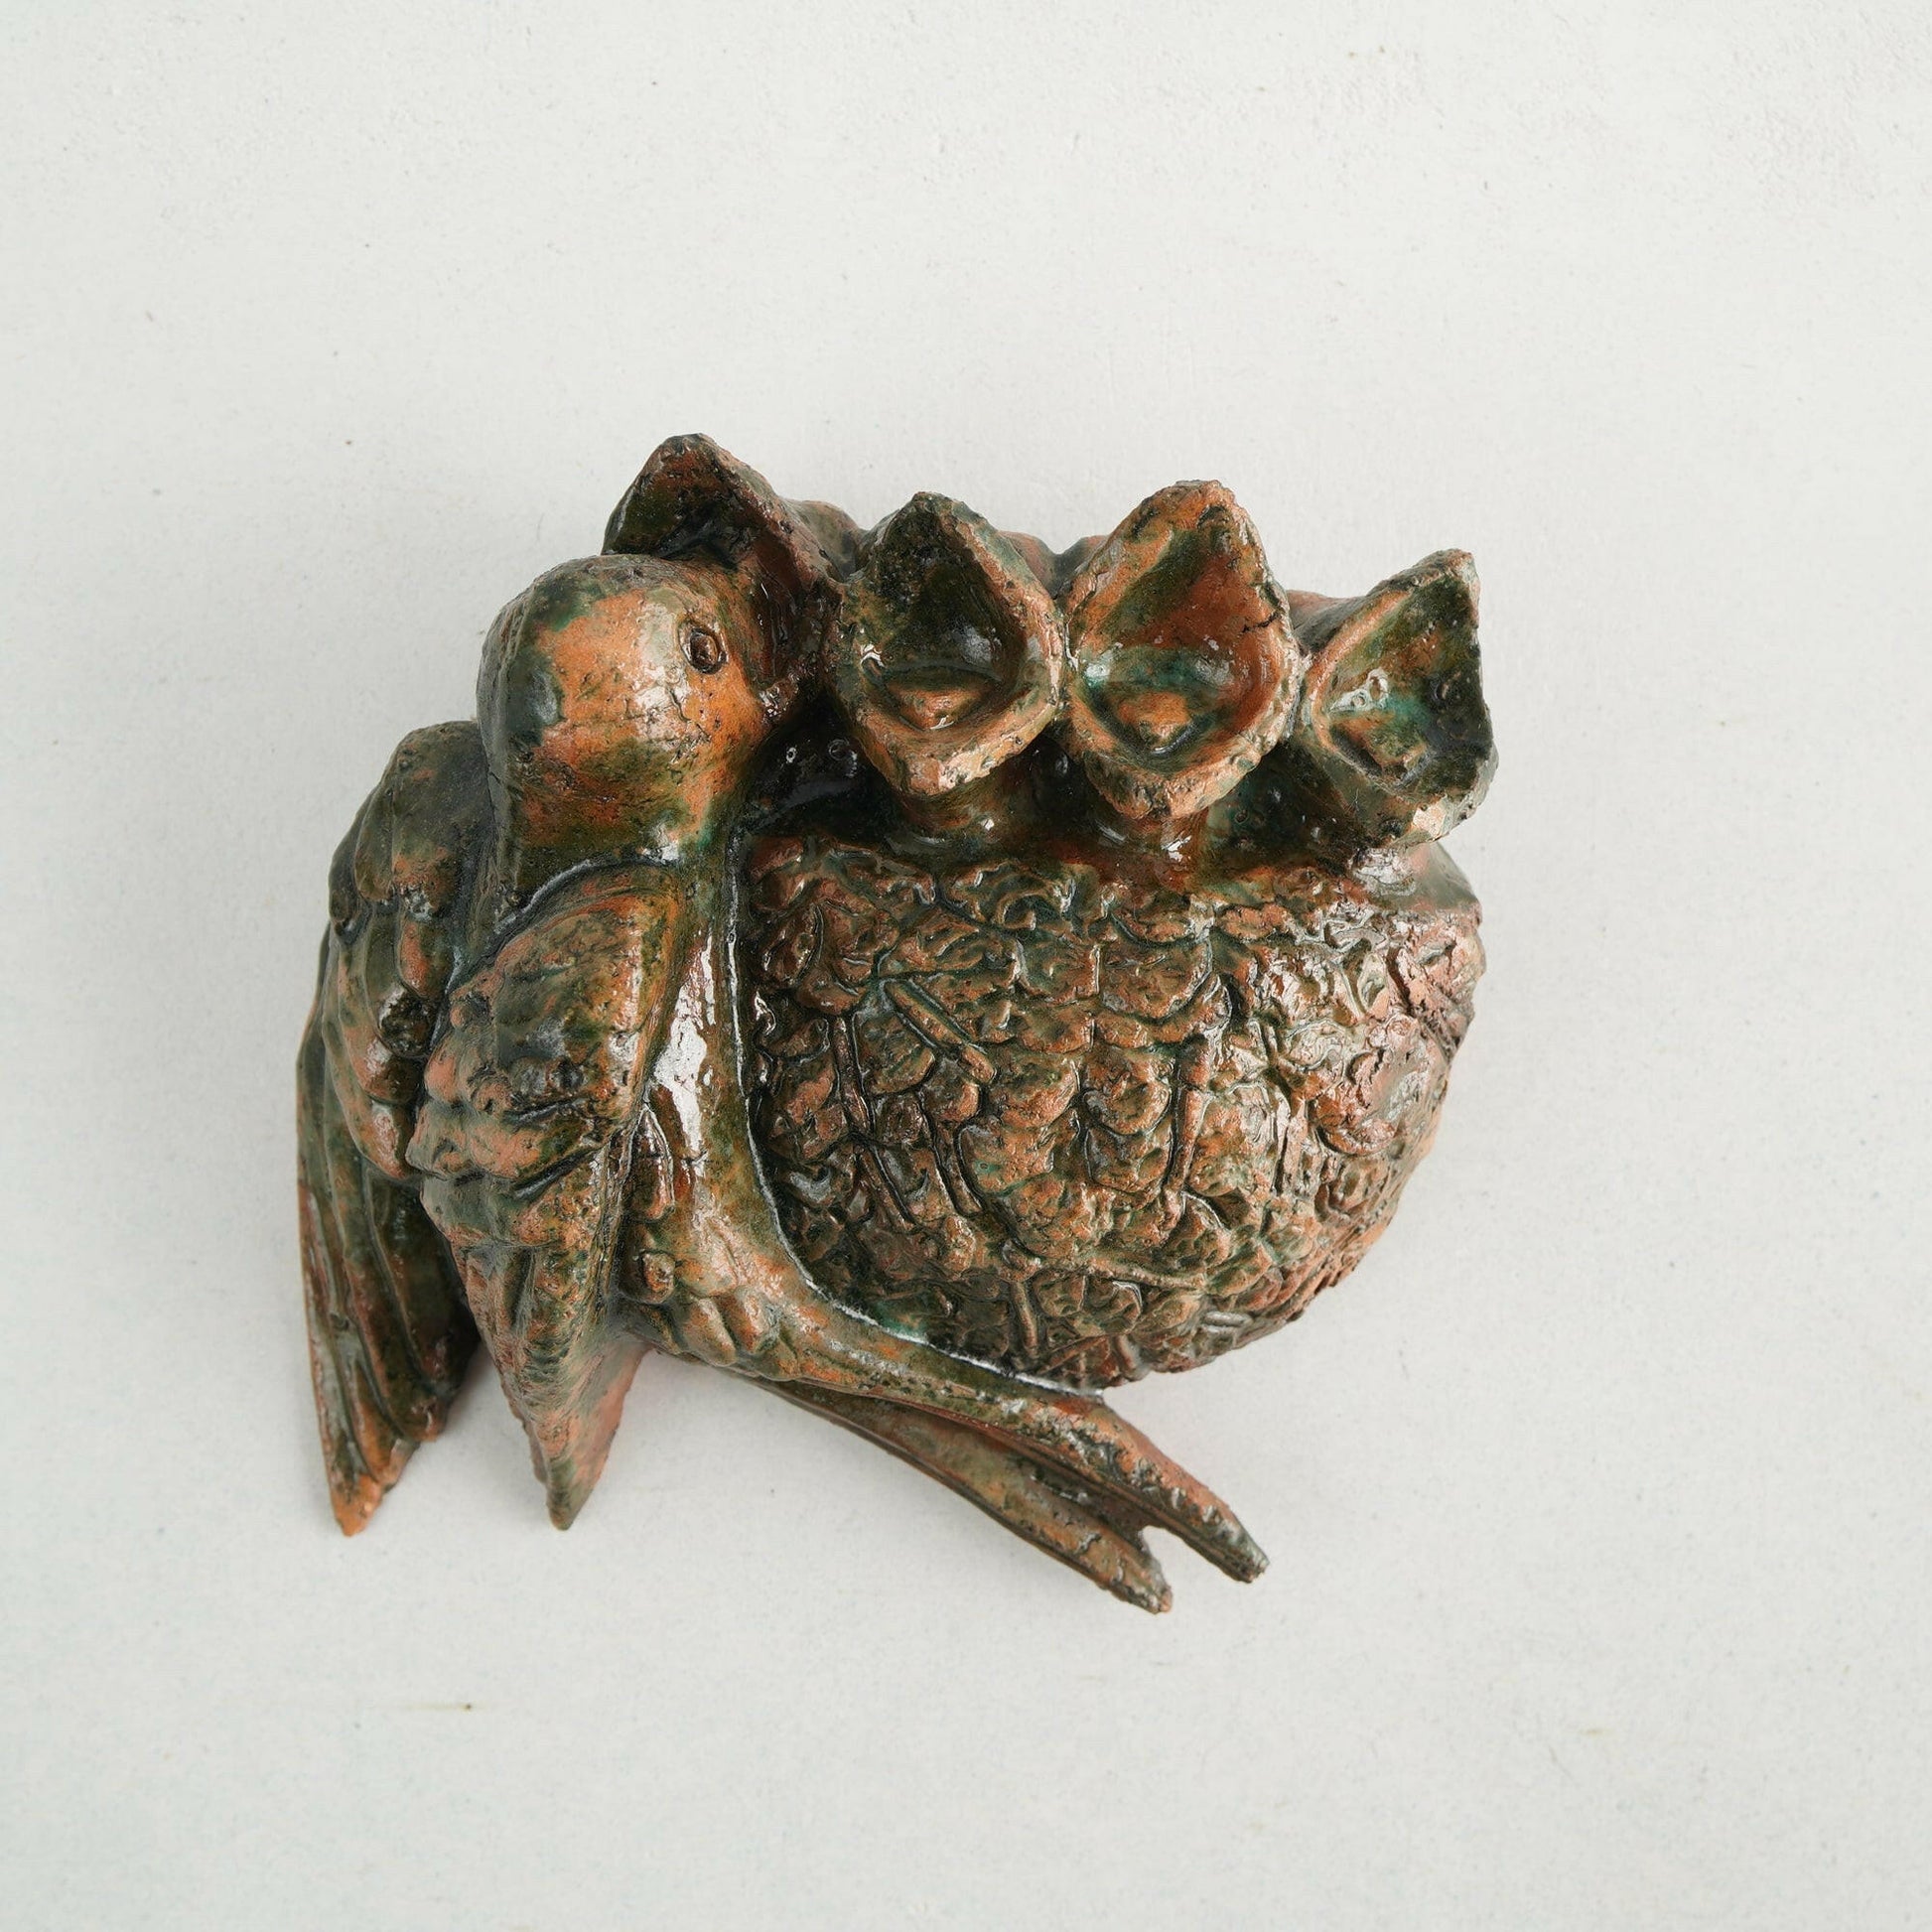 ラース・パグフェルト（Lars Pagfeldt）「ツバメの巣」の陶板 - 北欧食器Tacksamycket